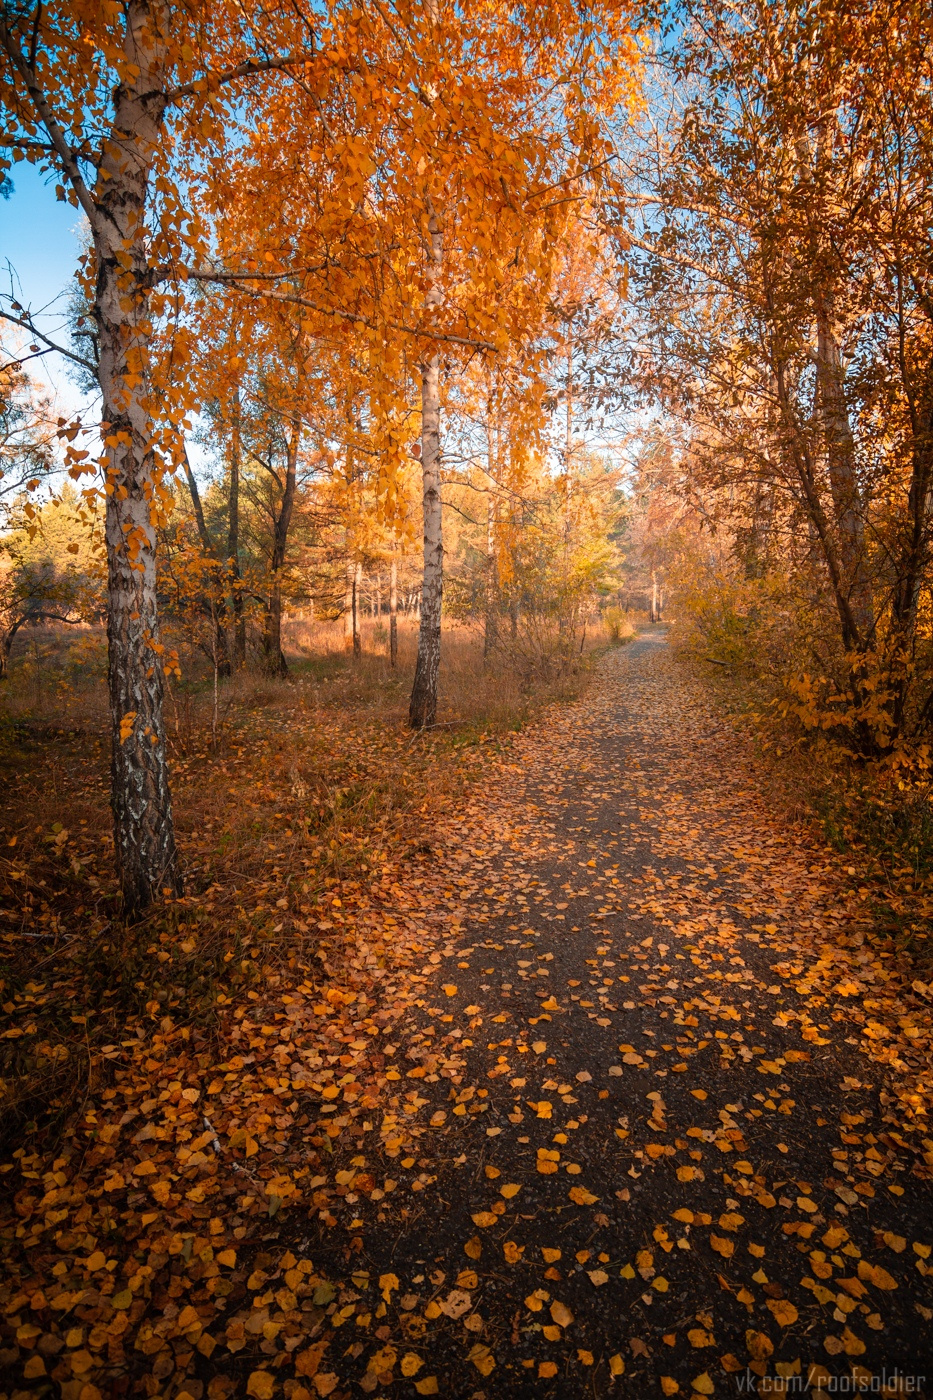 Осень в Омске Омск город провинция регион россия открытка осень листопад лес сад парк пейзаж